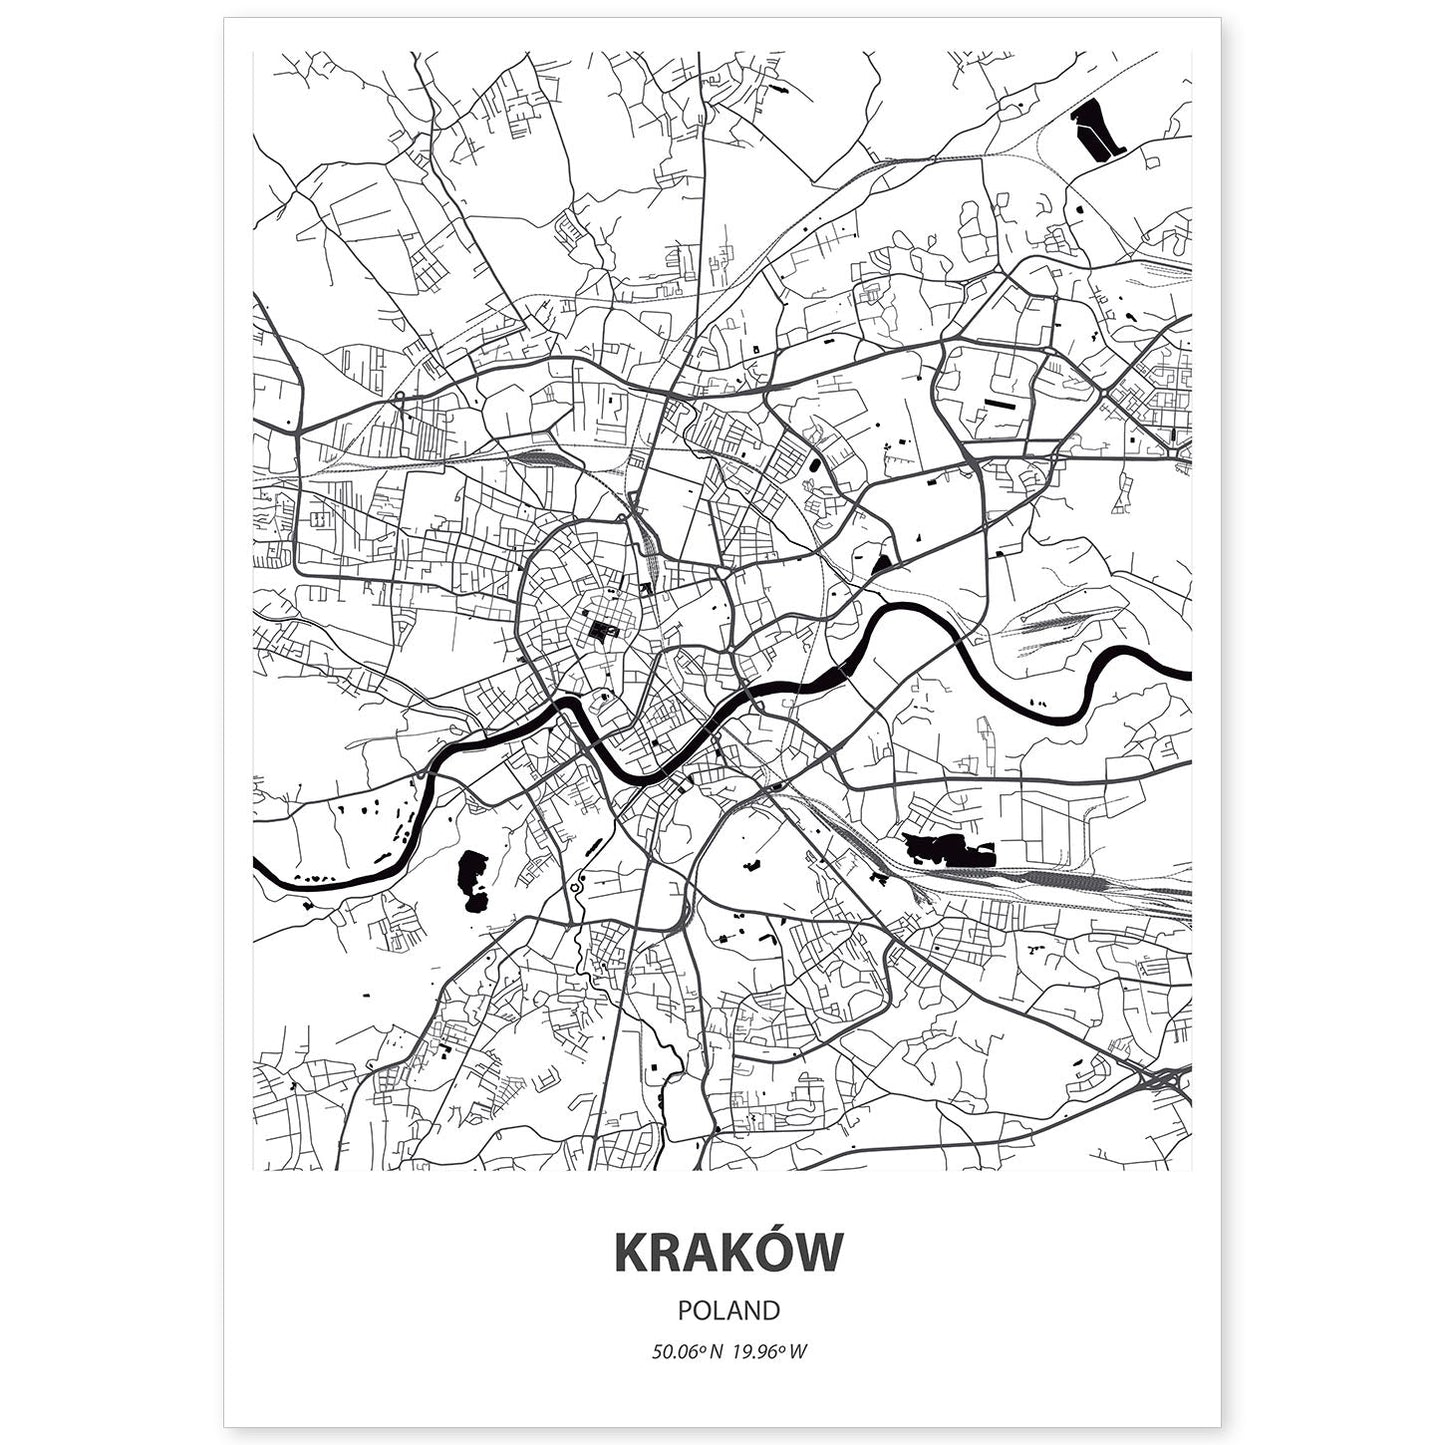 Poster con mapa de Krakow - Polonia. Láminas de ciudades de Europa con mares y ríos en color negro.-Artwork-Nacnic-A4-Sin marco-Nacnic Estudio SL